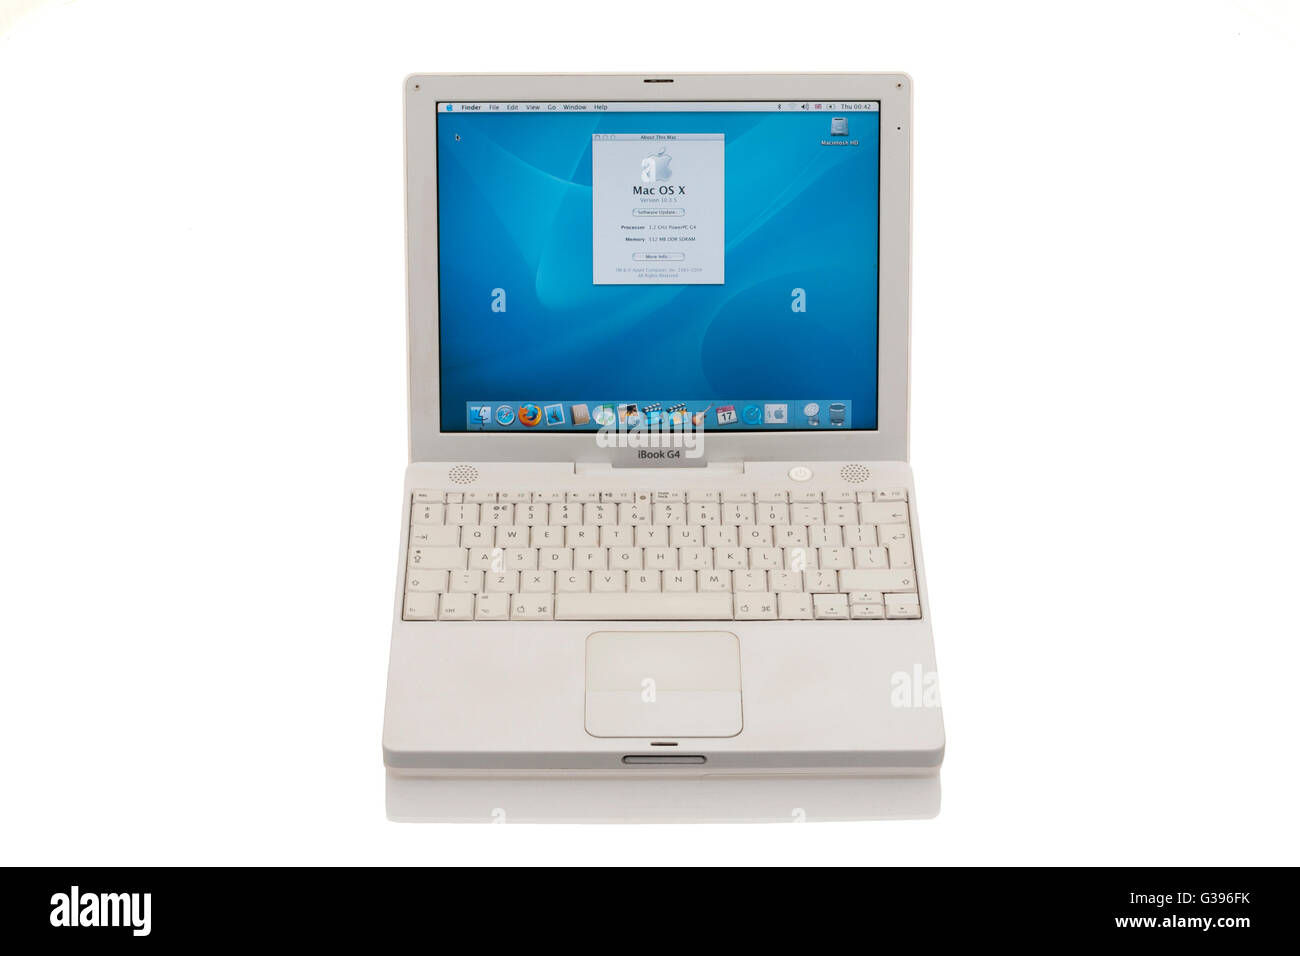 Apple iBook G4 ordinateur portable / ordinateur portable avec TrackPad avec fonction de défilement / trackpad / pavé tactile, ' a propos de ce Mac ' écran et clavier. Banque D'Images